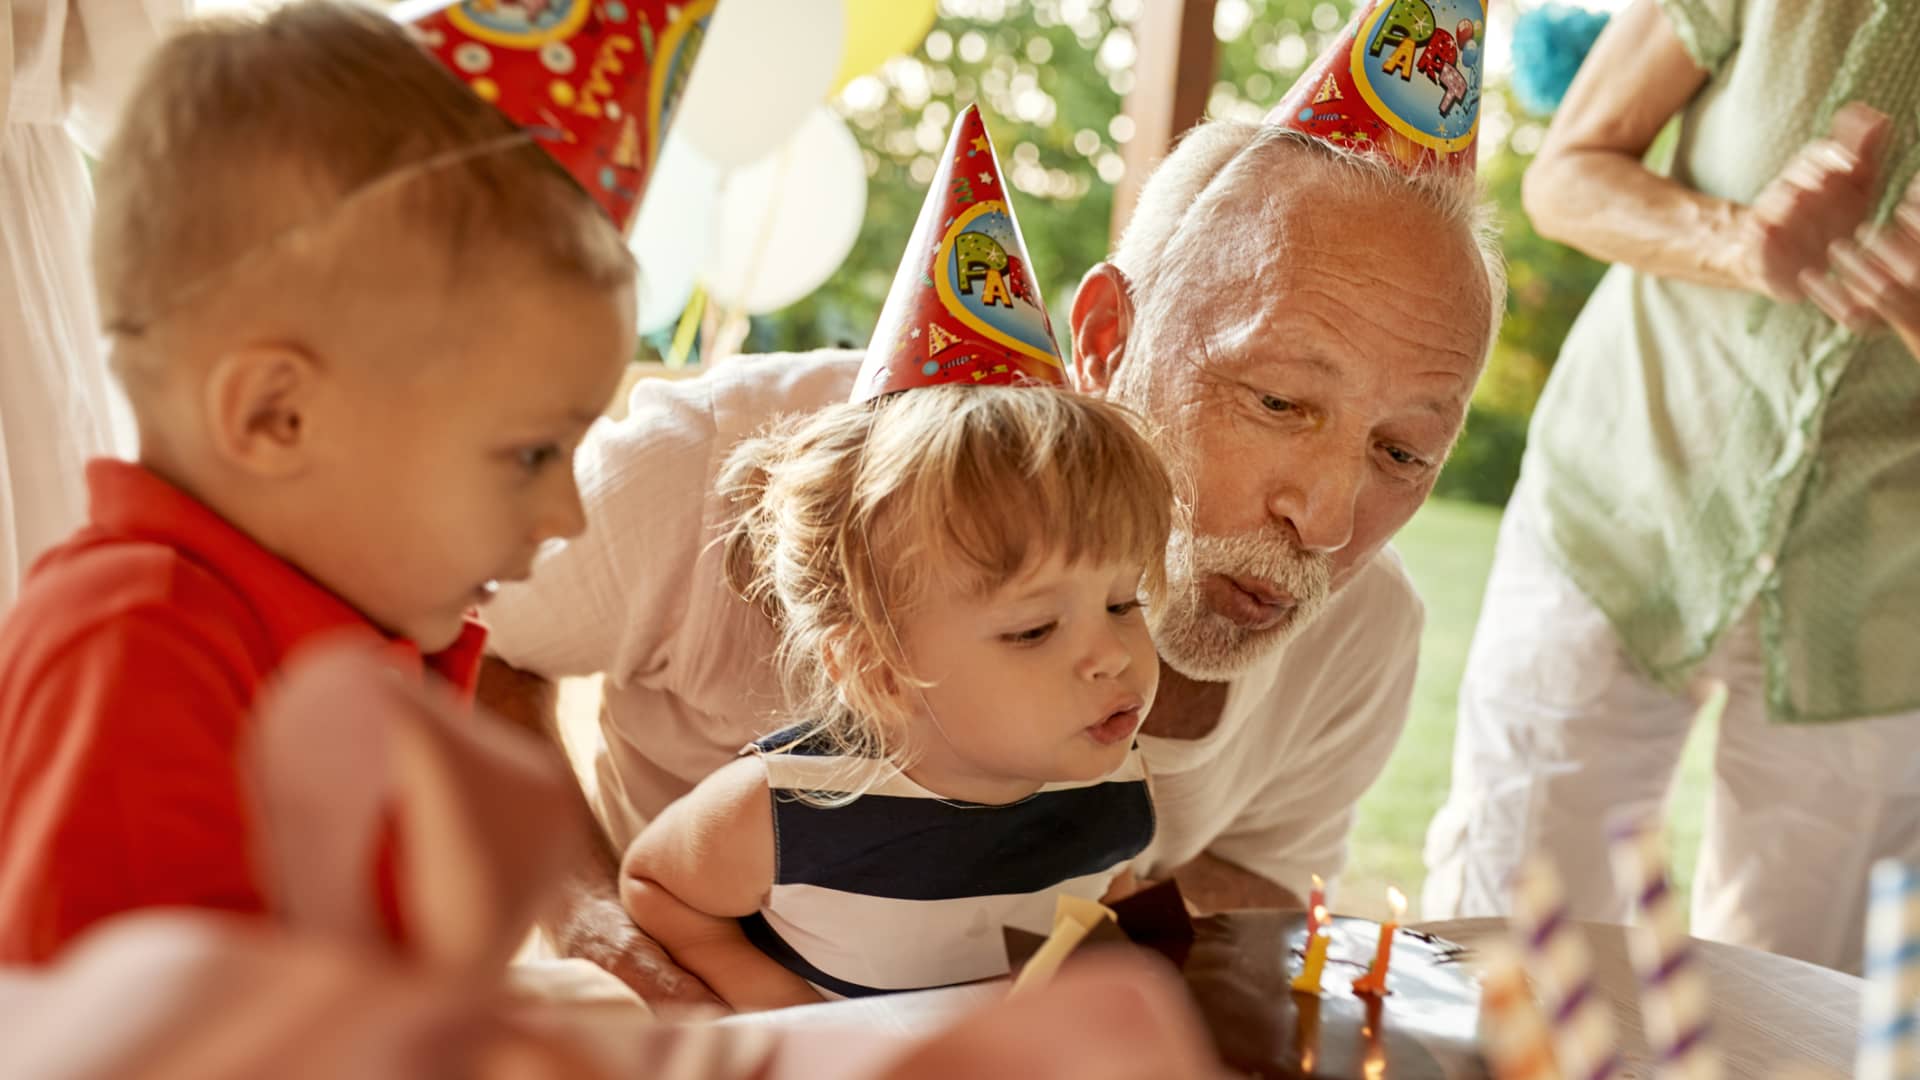 L'età pensionabile della previdenza sociale raggiunge i 67 anni. Alcuni dicono che potrebbe aumentare